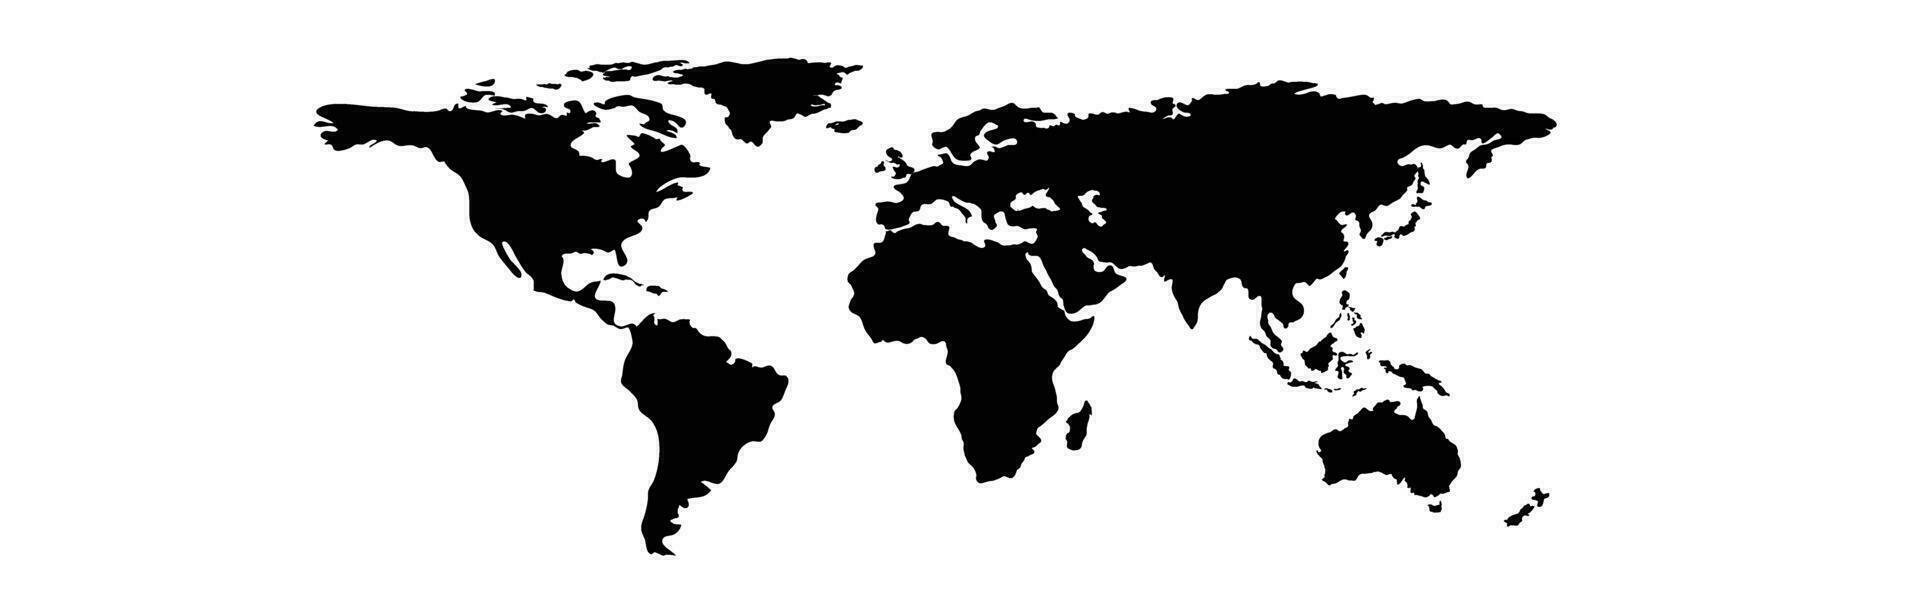 mundo mapa geografia globo terra vetor